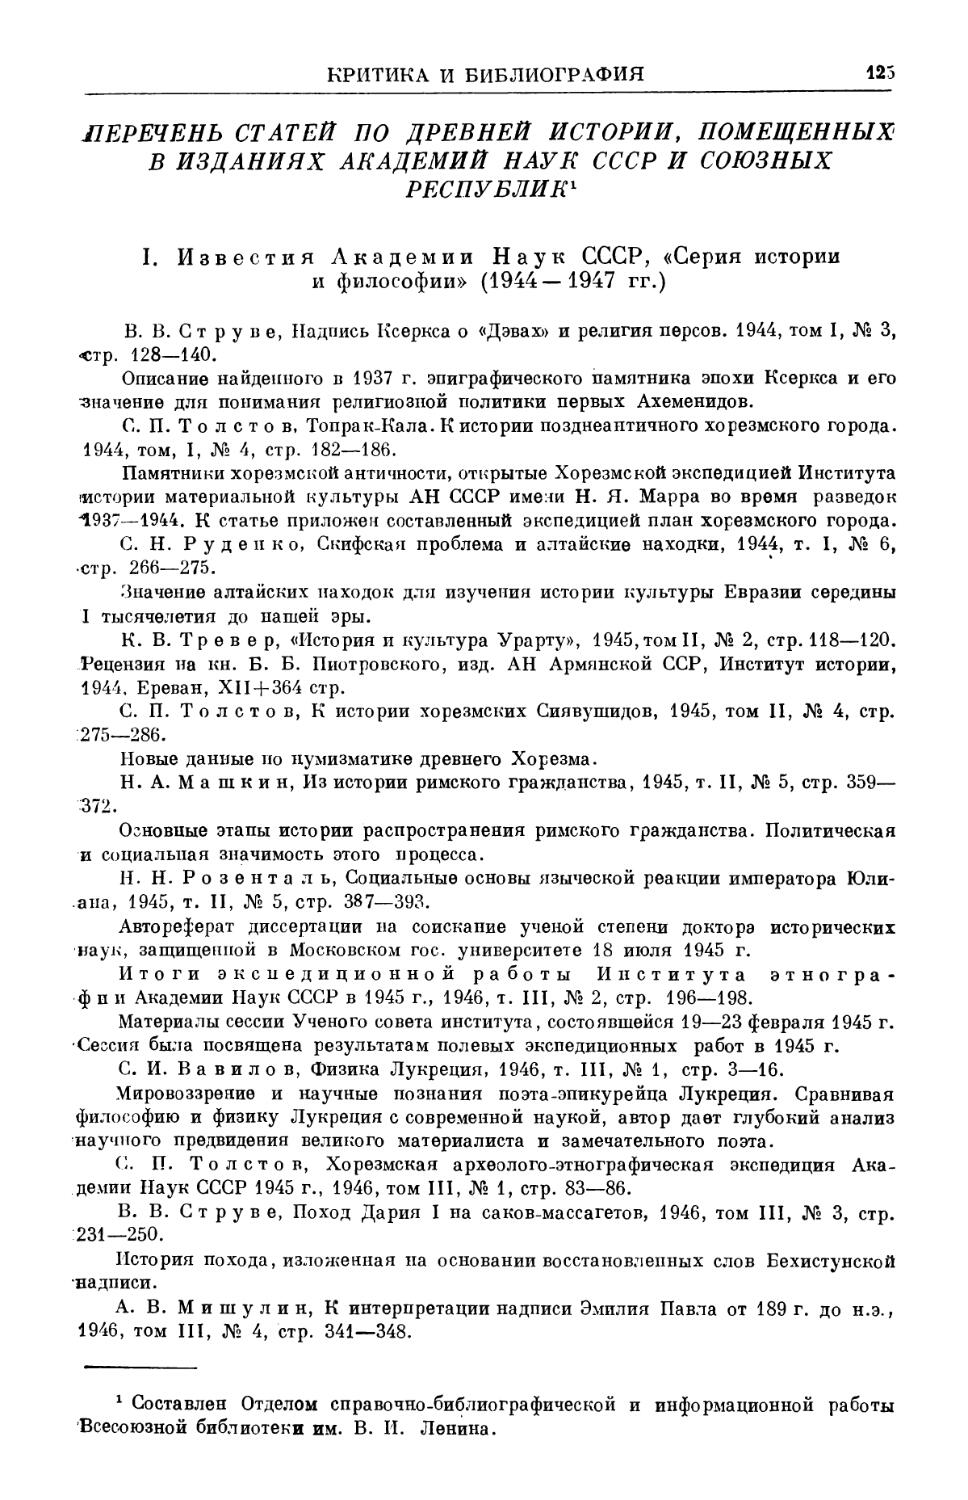 Перечень статей по древней истории в изданиях АН СССР и союзных республик